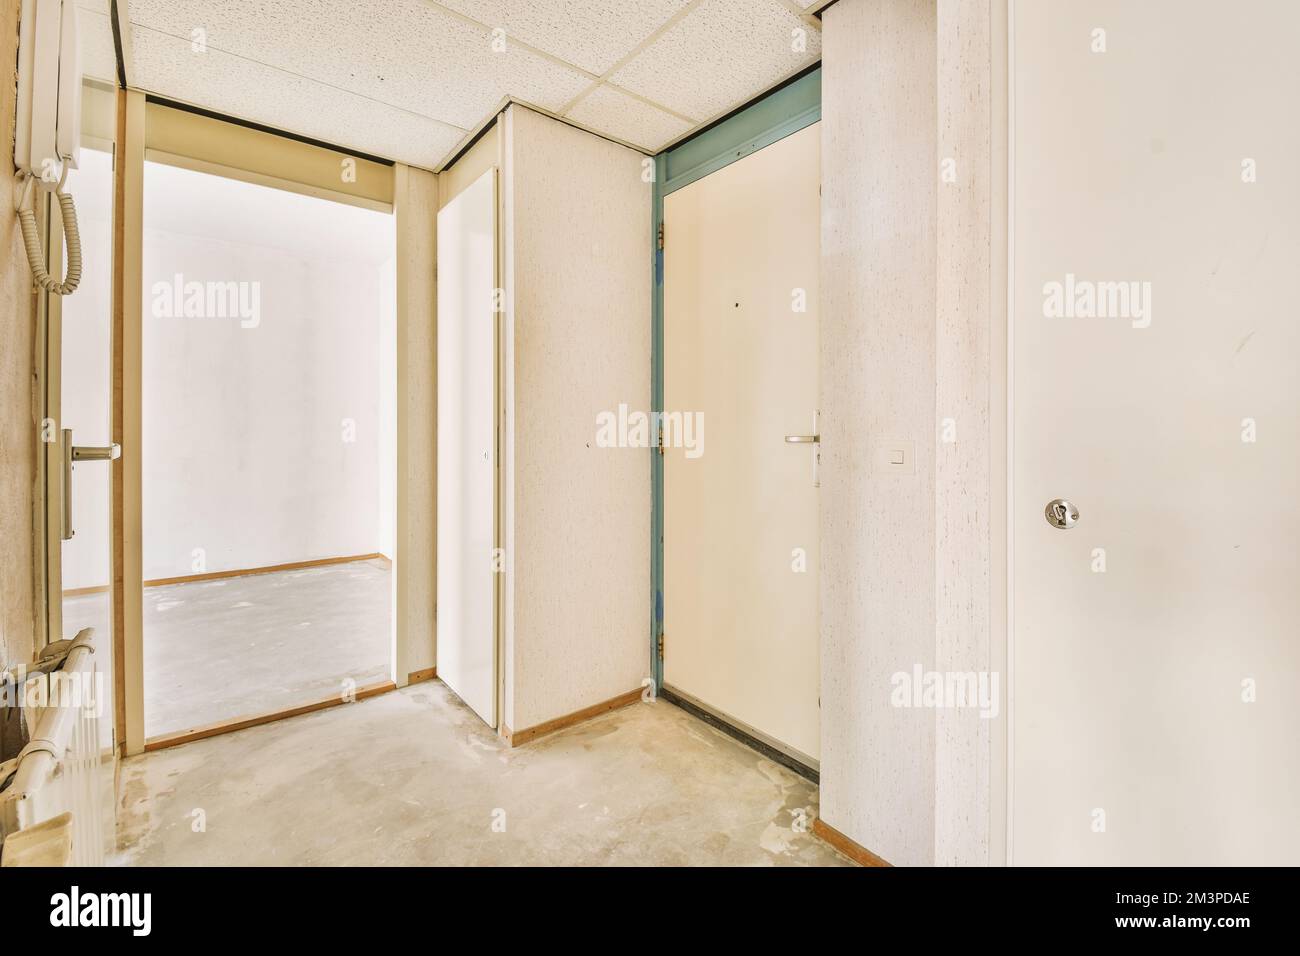 Das Innere eines Raumes ohne Möbel oder Gegenstände und eine offene Tür, die zu einem anderen Raum führt Stockfoto